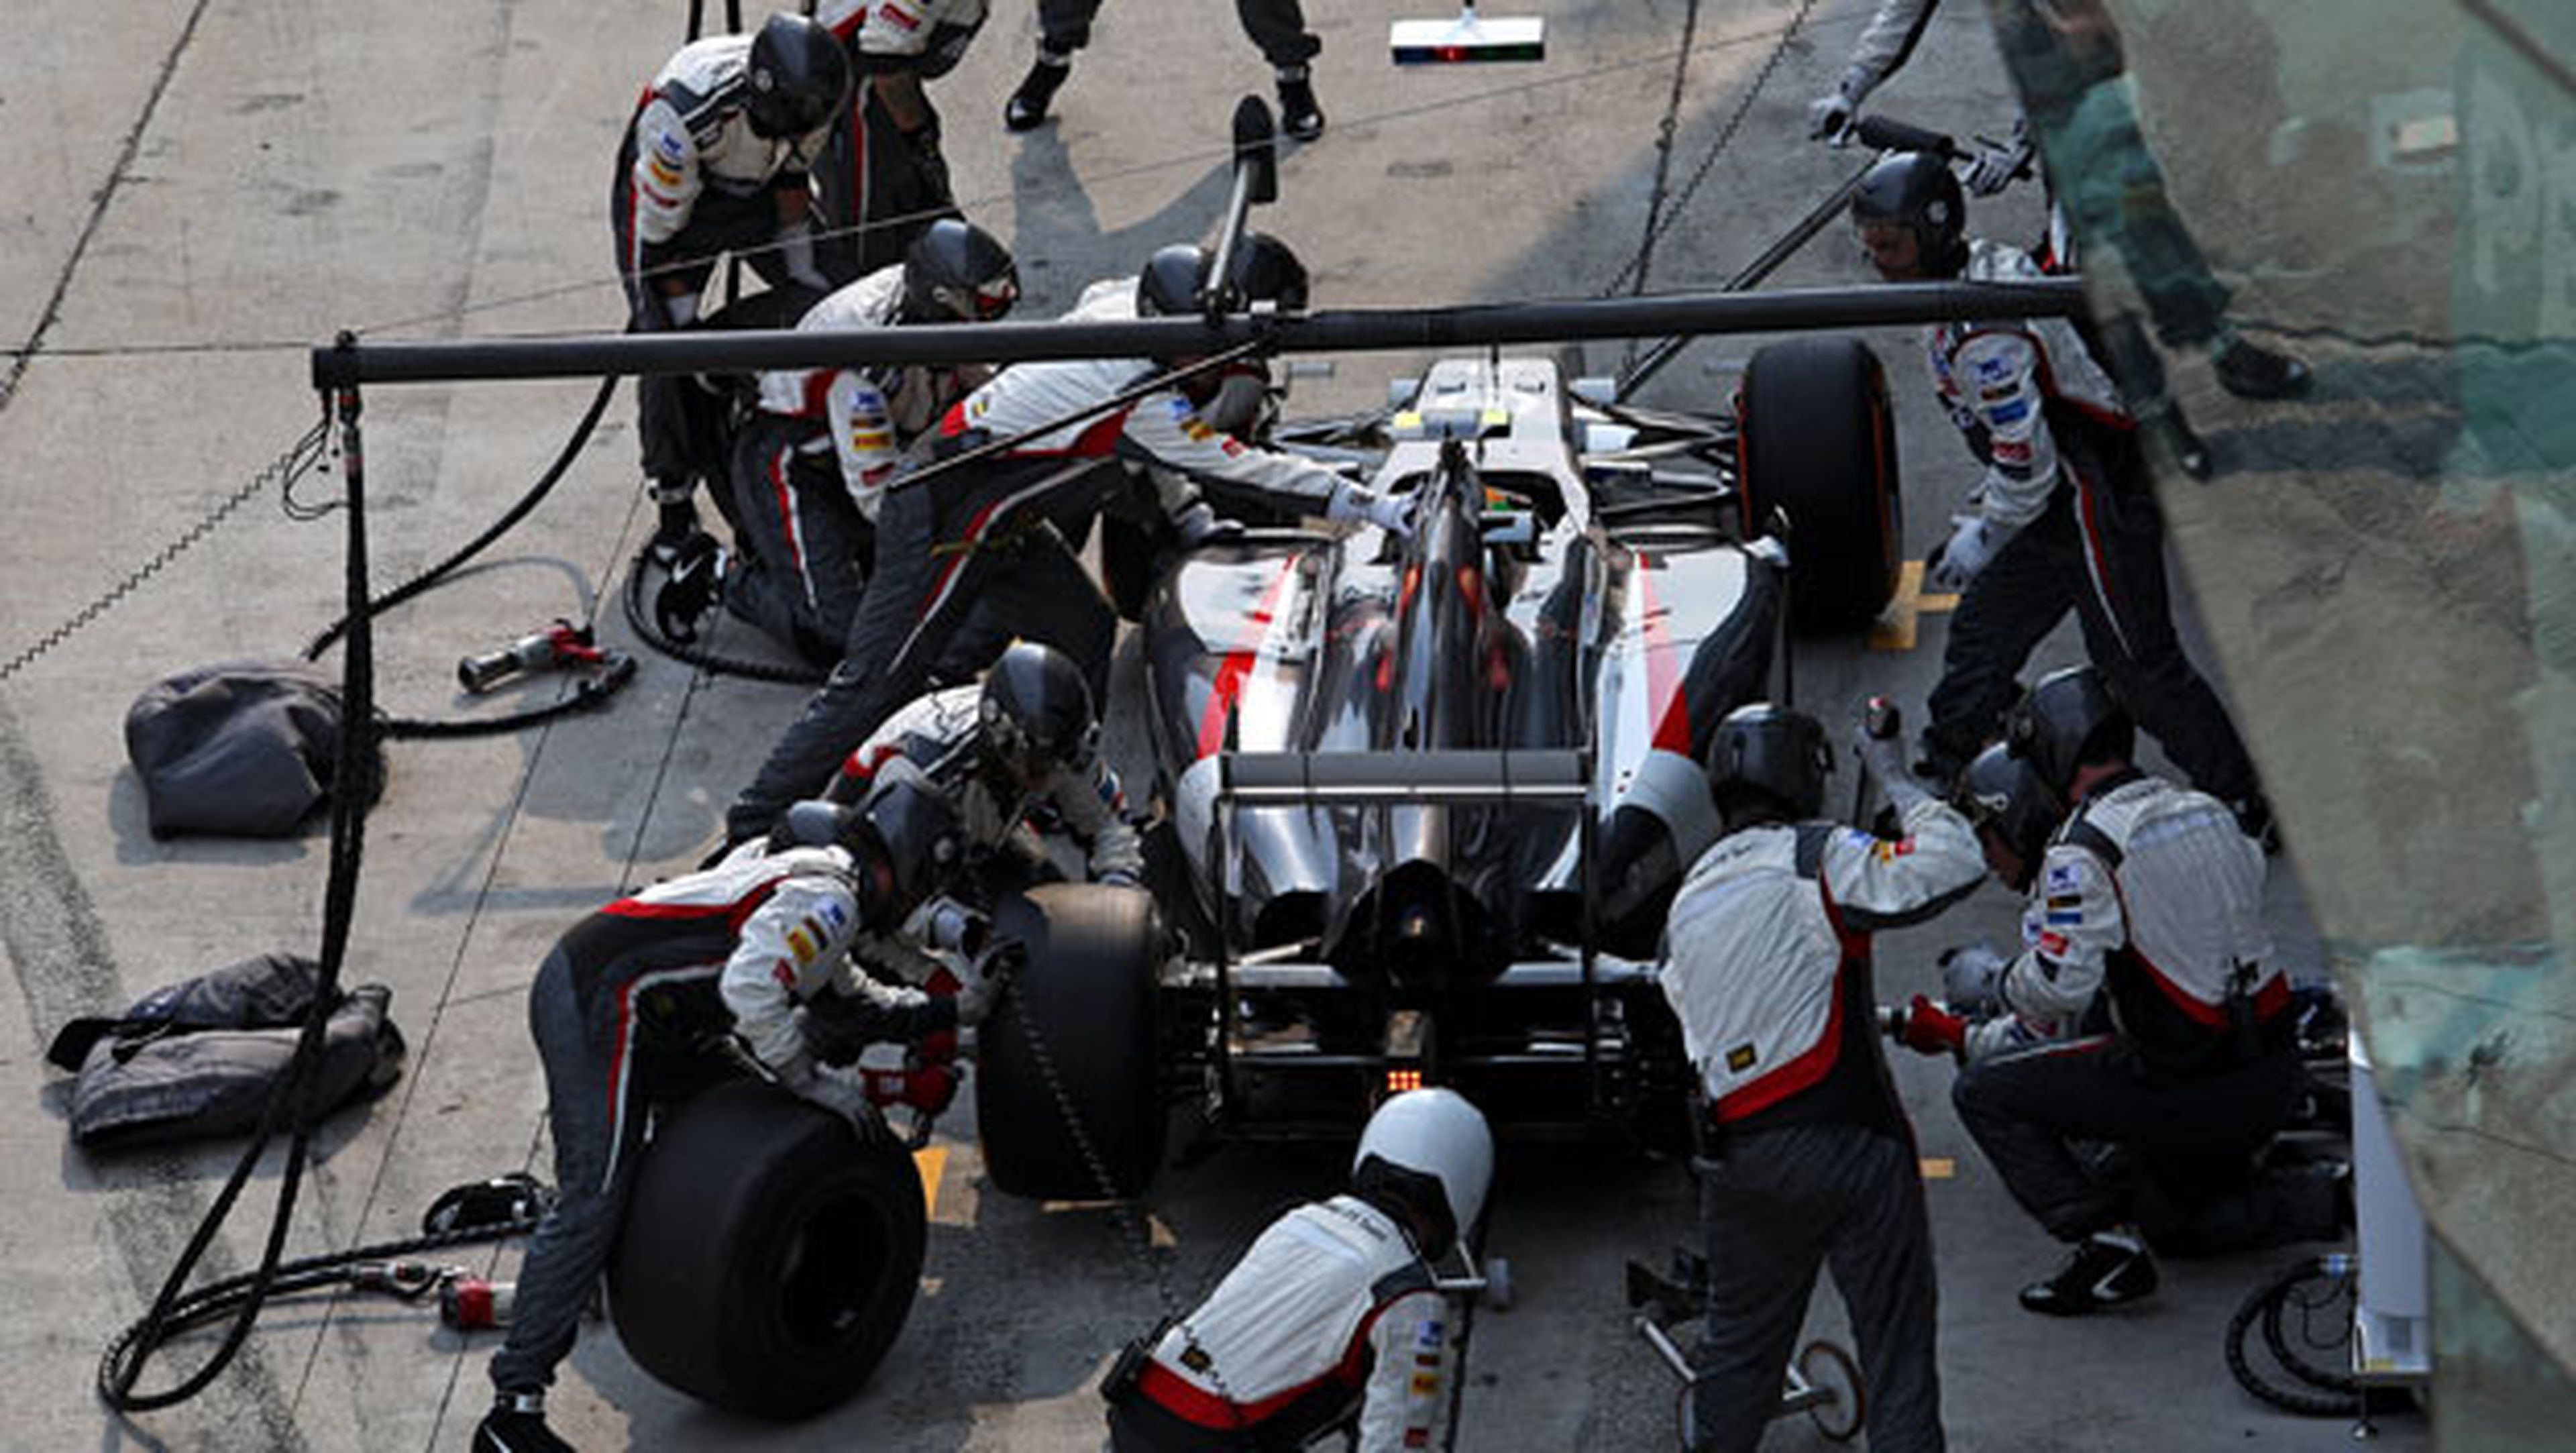 Parada en boxes del equipo Sauber